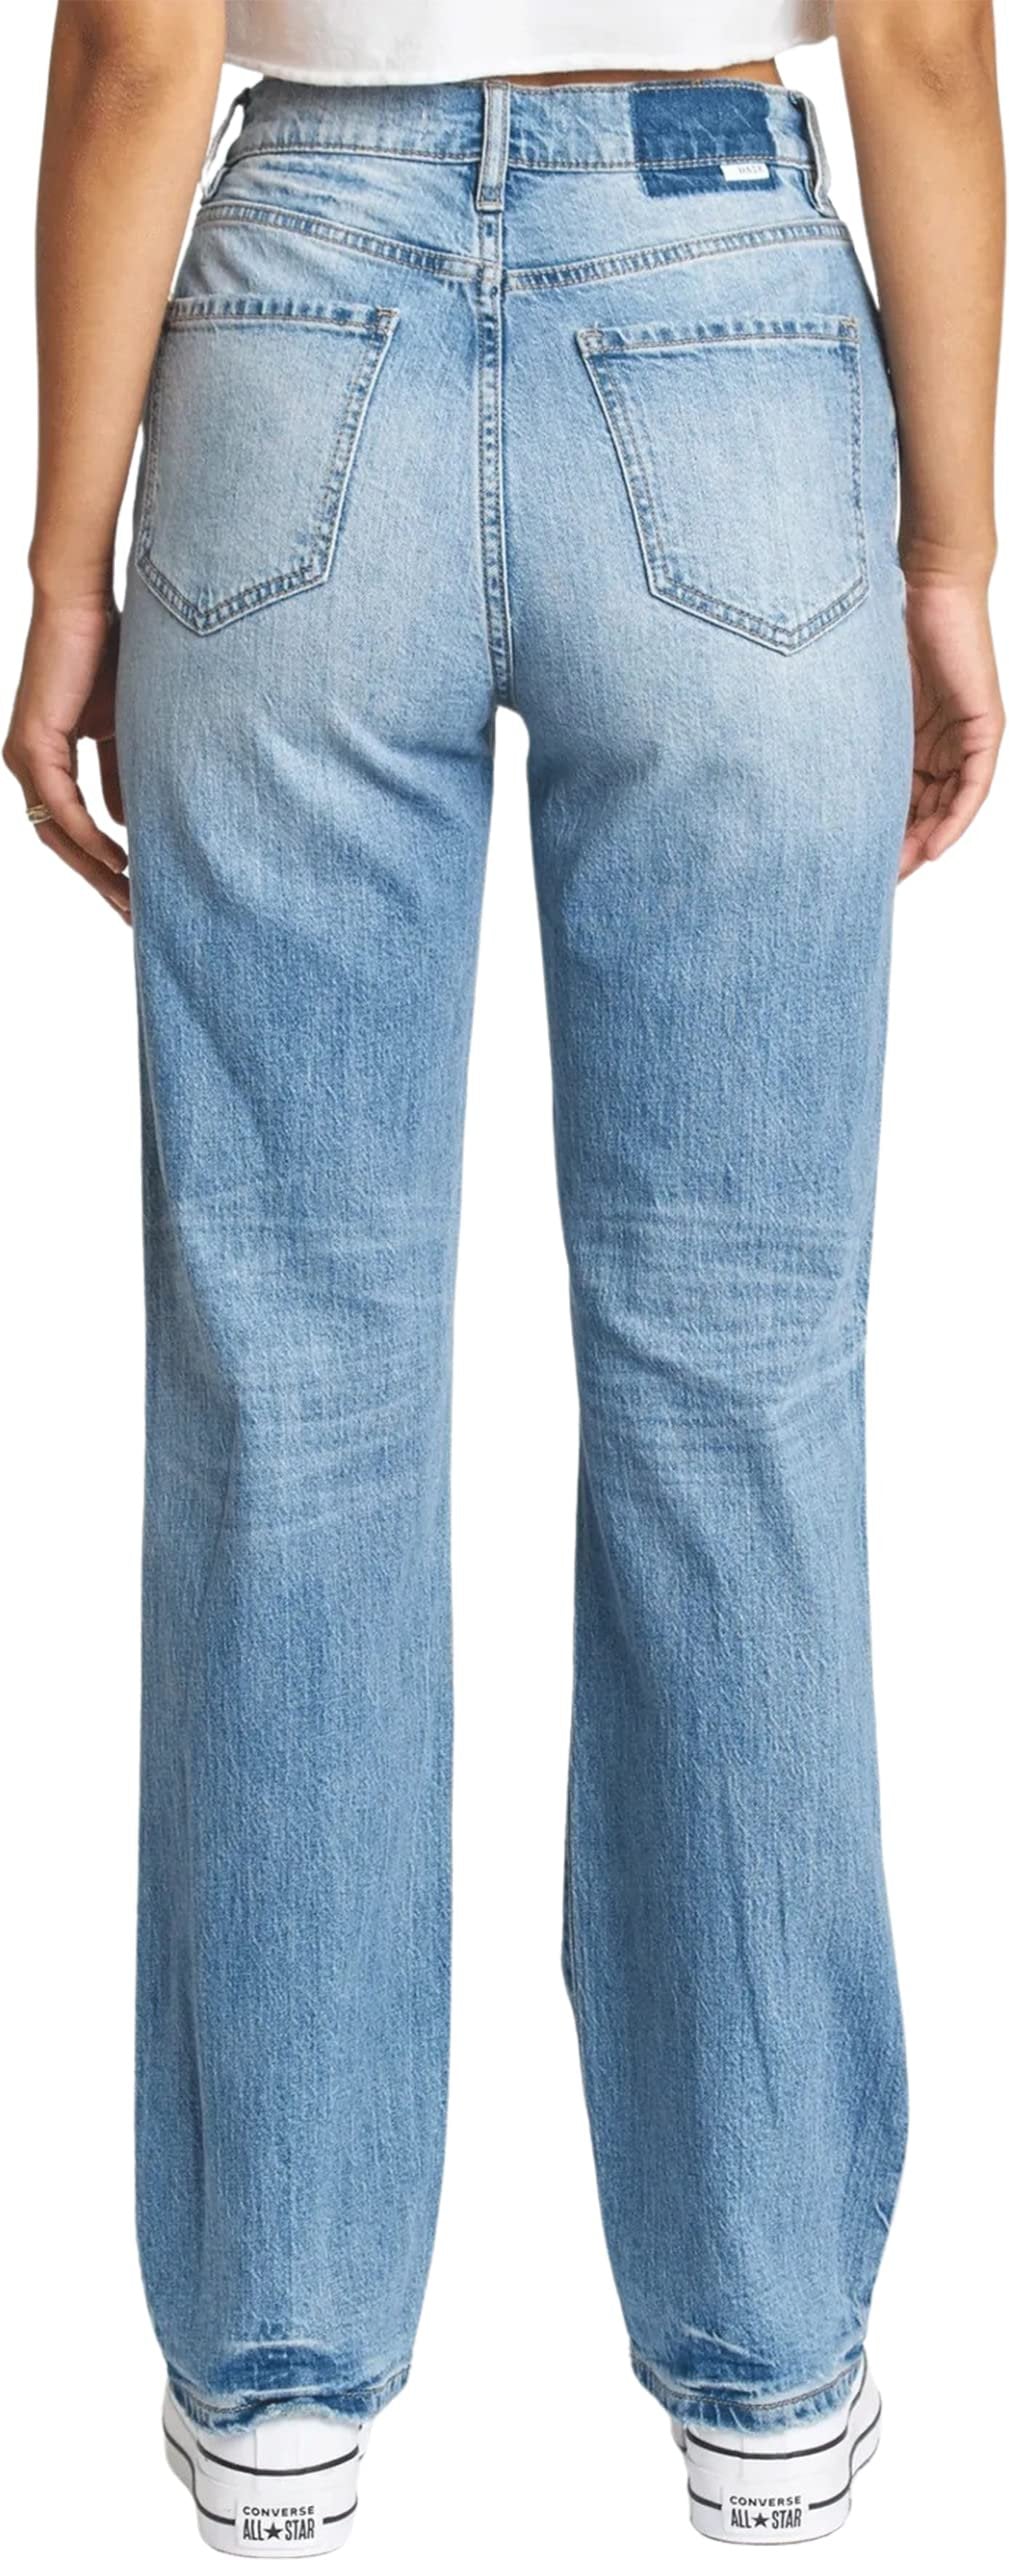 DAZE Sundaze High Rise Dad Denim Jeans in Fool